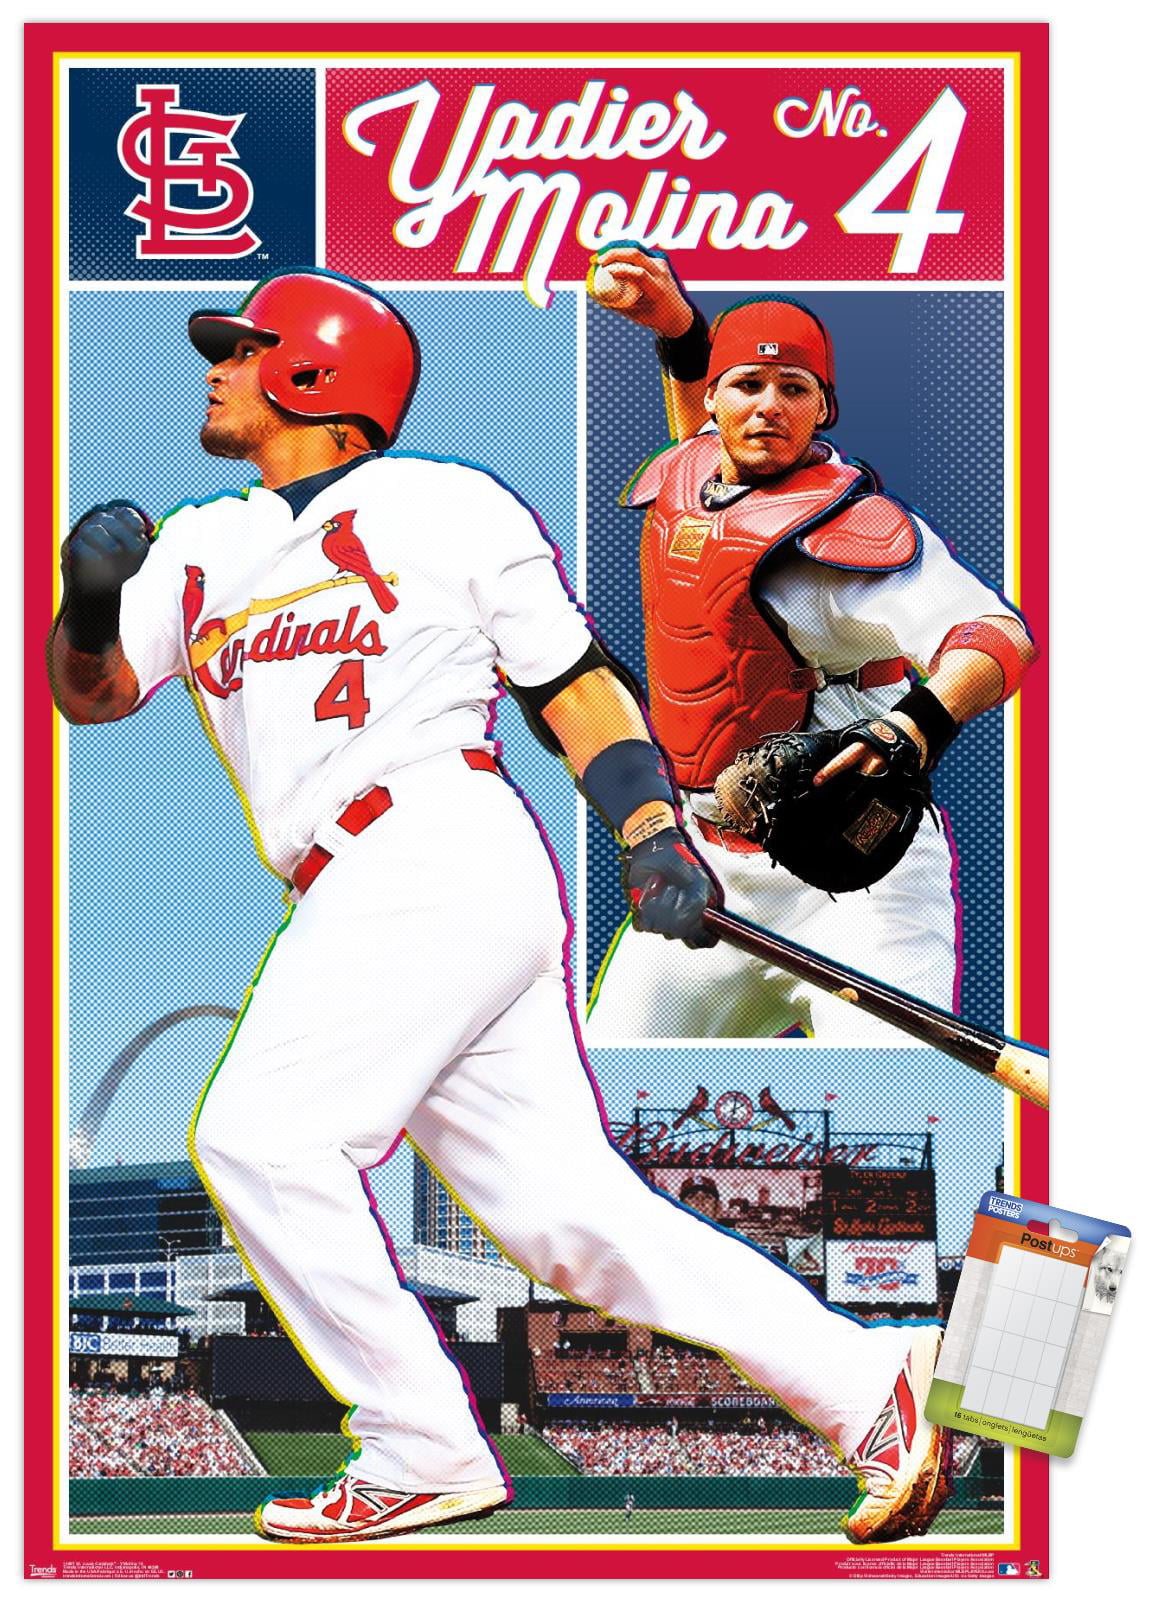 MLB St. Louis Cardinals - Yadier Molina Wall Poster, 22.375 x 34 